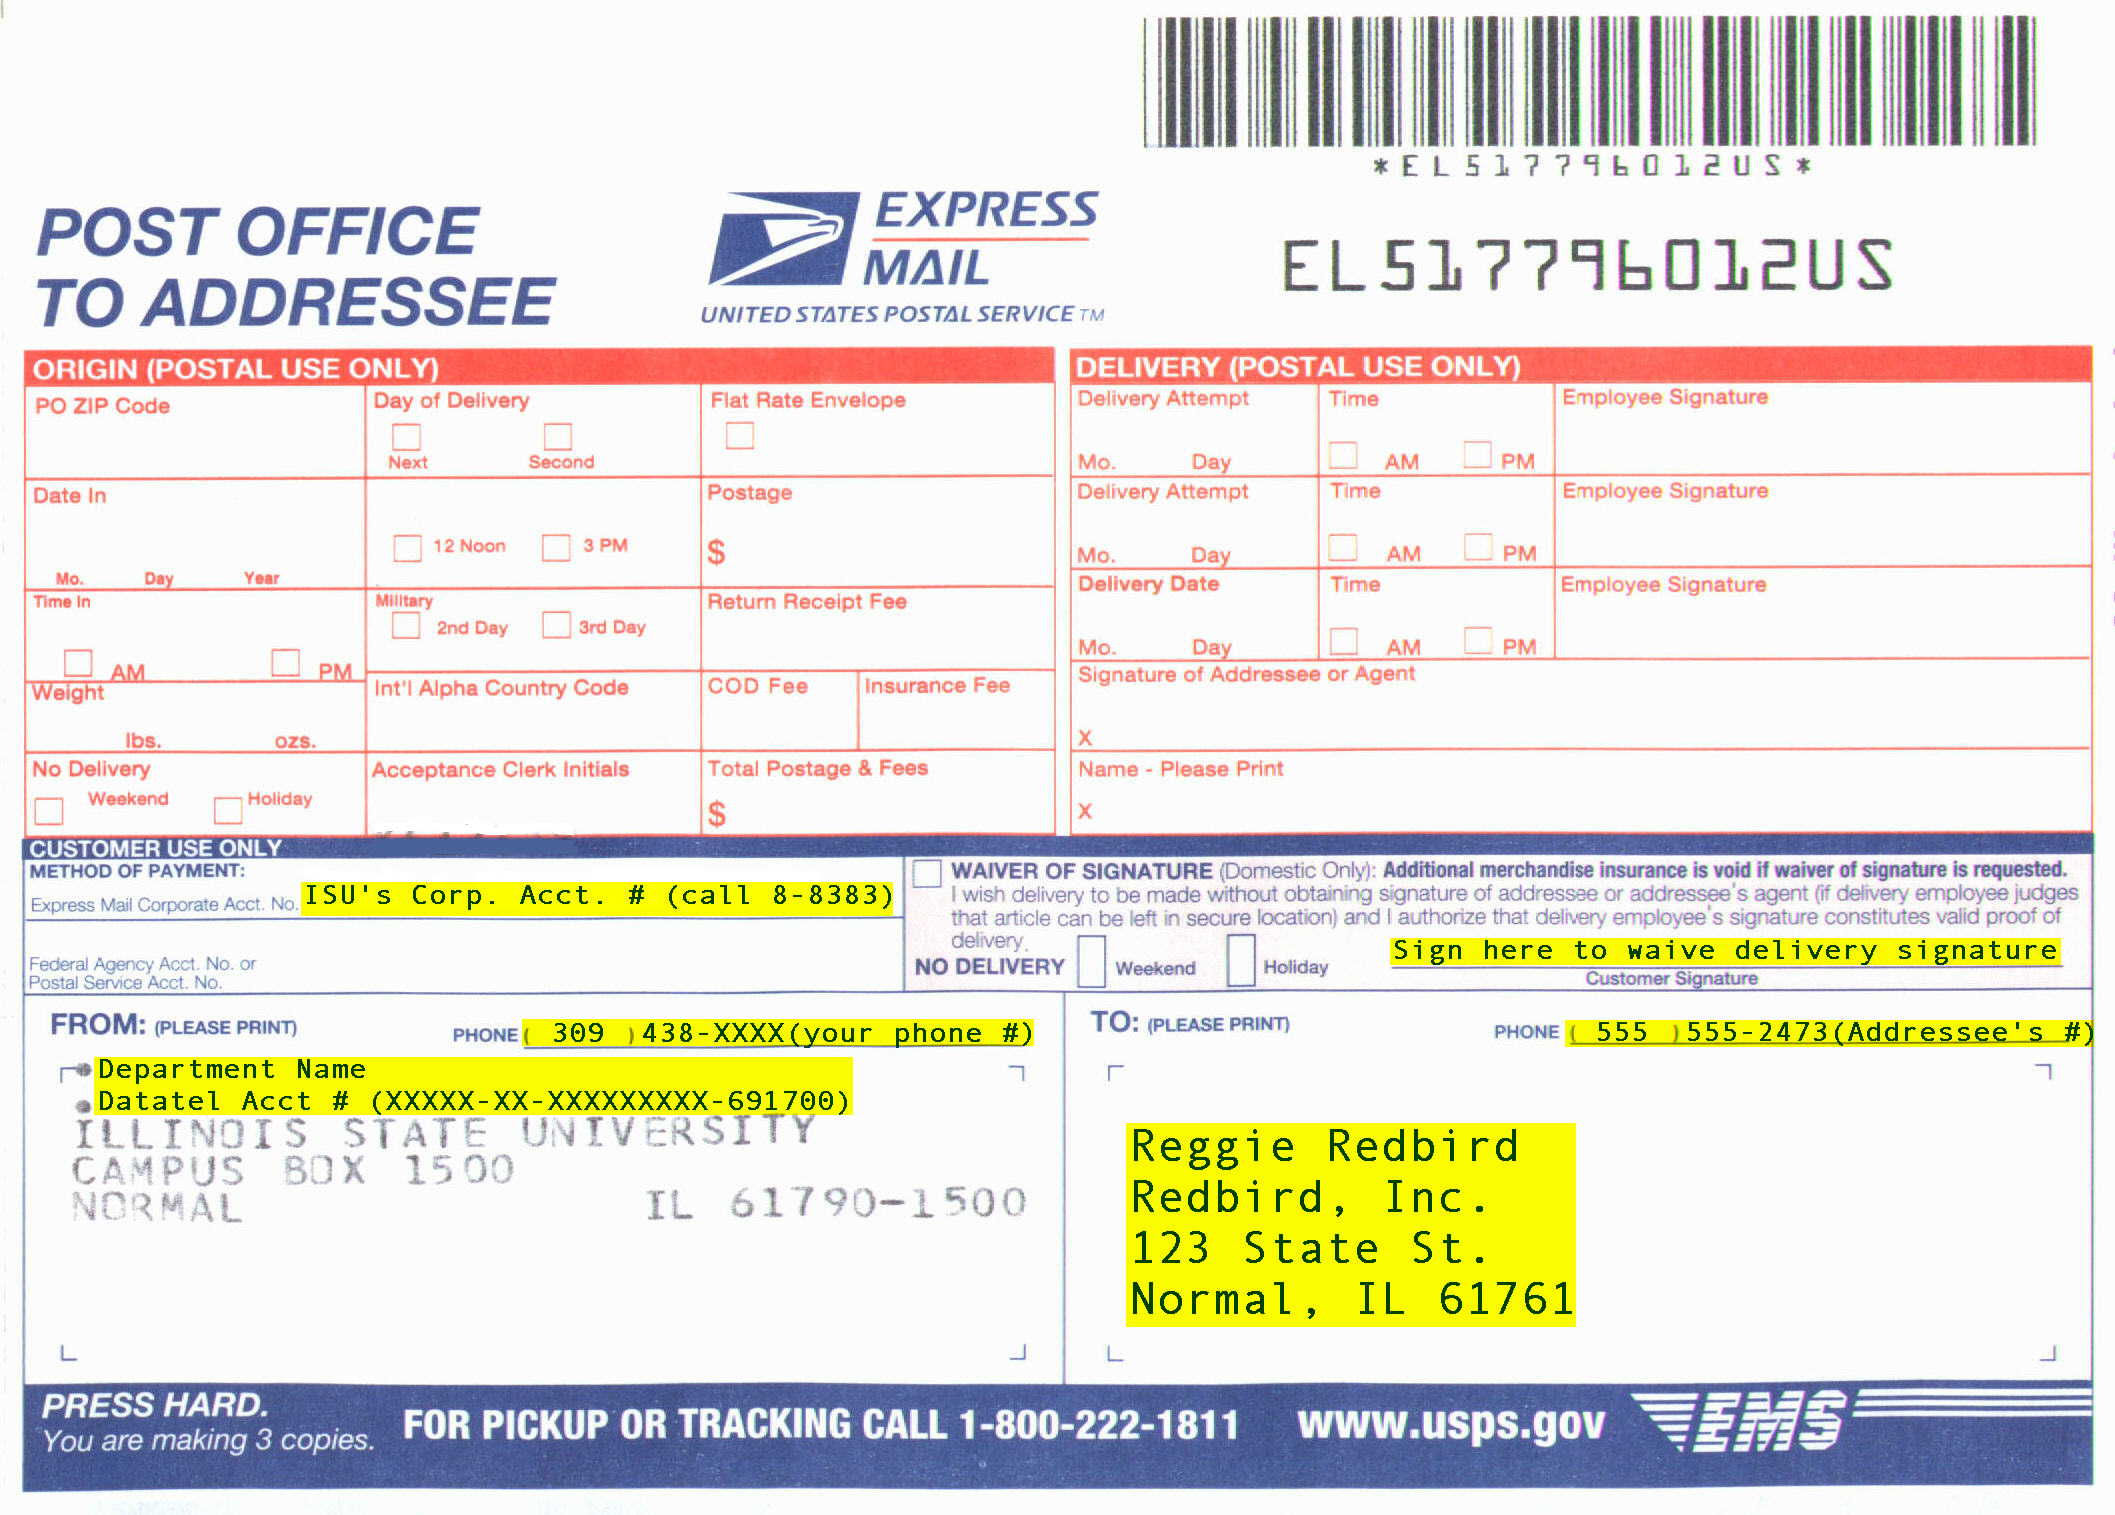 U.S. Postal Service Express Mail airbill